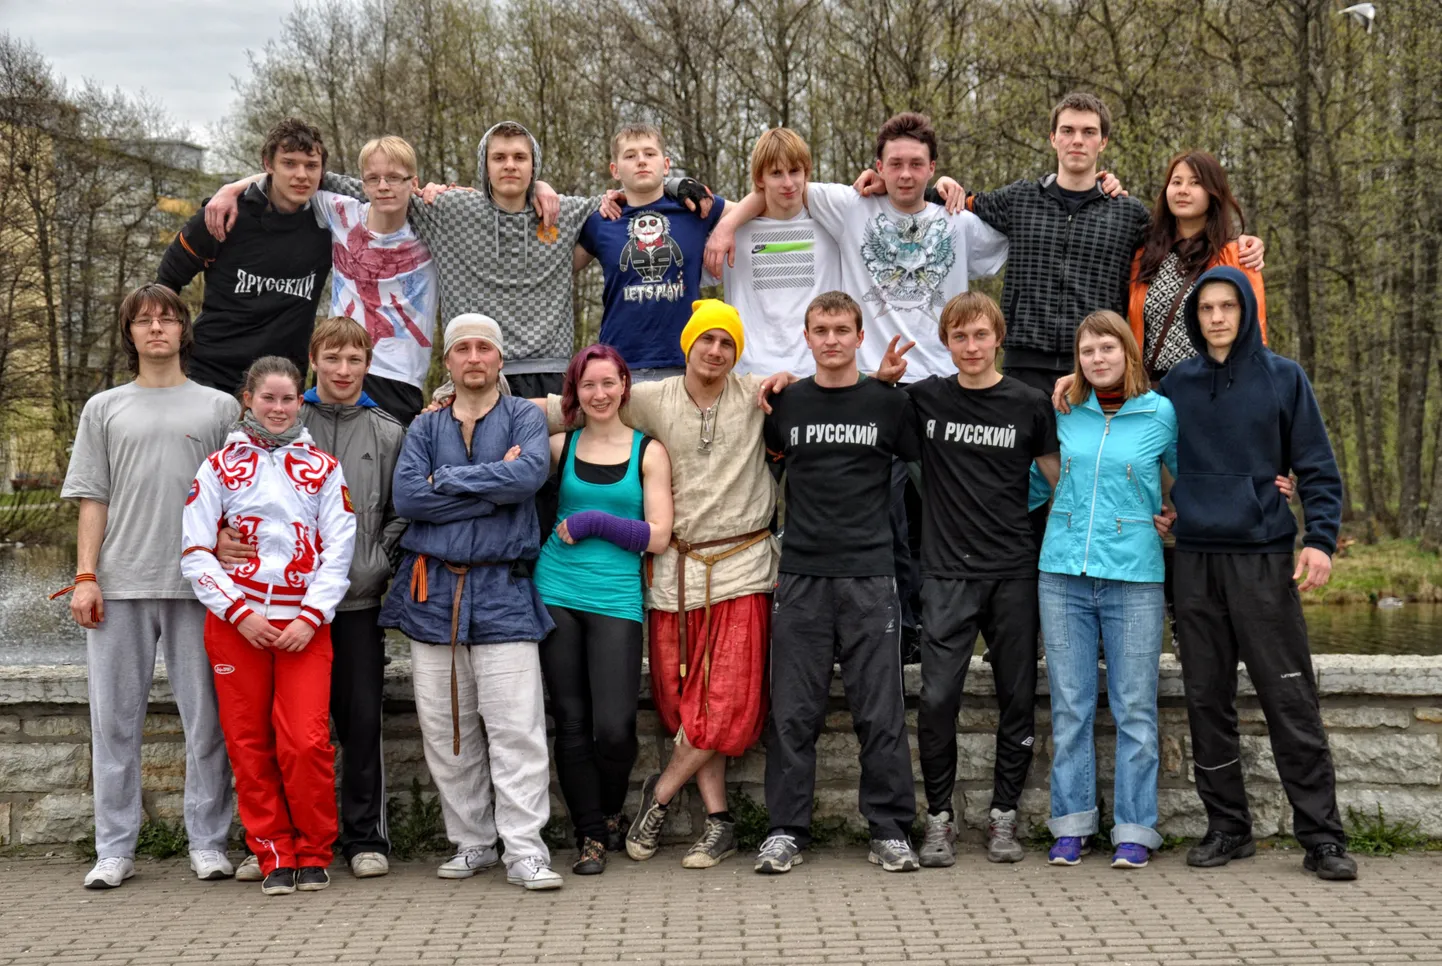 Участники Пробежки, состоявшейся 6 мая 2012.